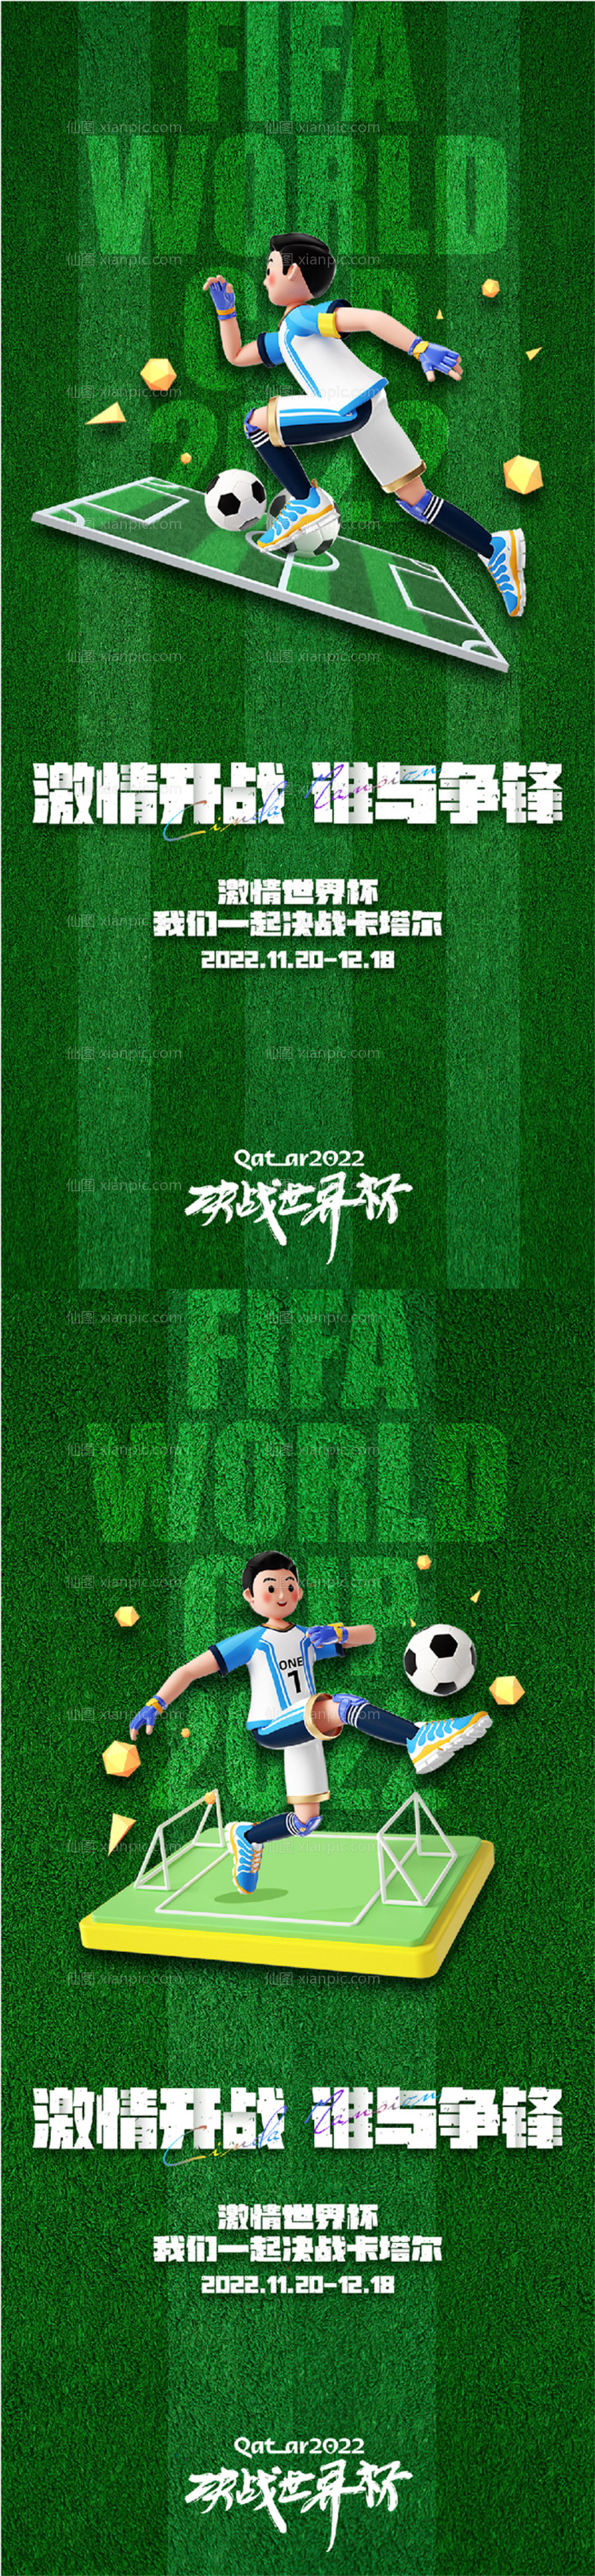 素材乐-世界杯足球比赛海报